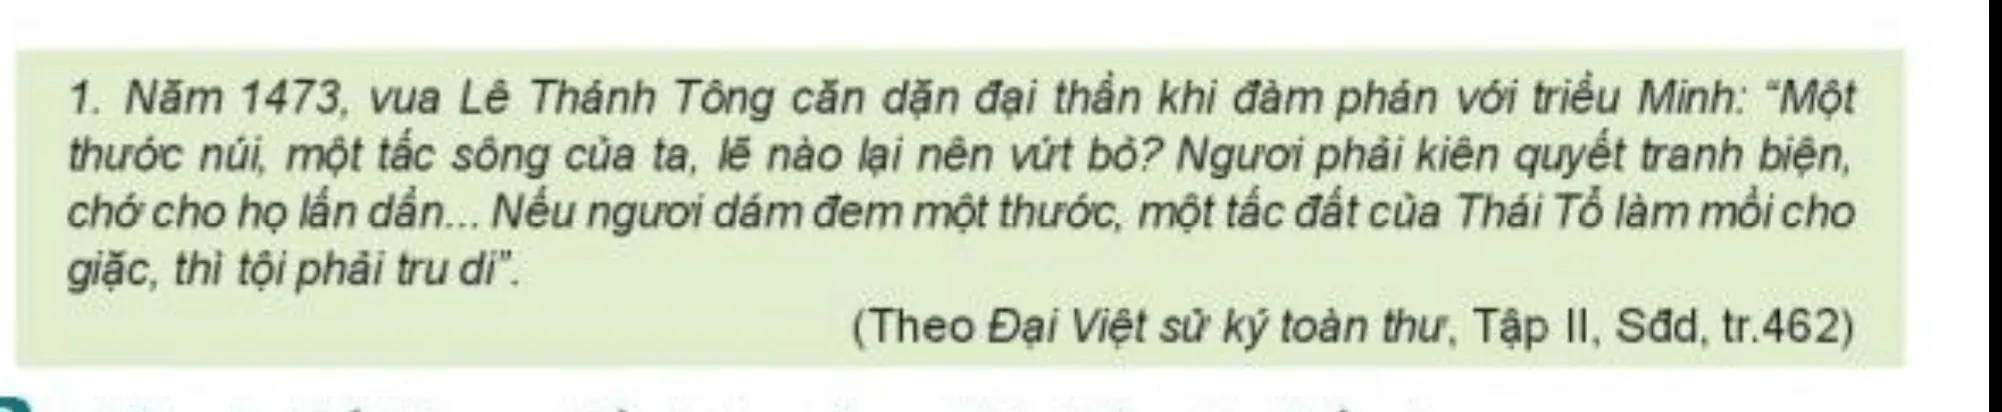 Tư liệu 1 thể hiển quyết tâm bảo vệ chủ quyền lãnh thổ của nhà Lê Sơ Bai 17 Dai Viet Thoi Le So 1428 1527 123248